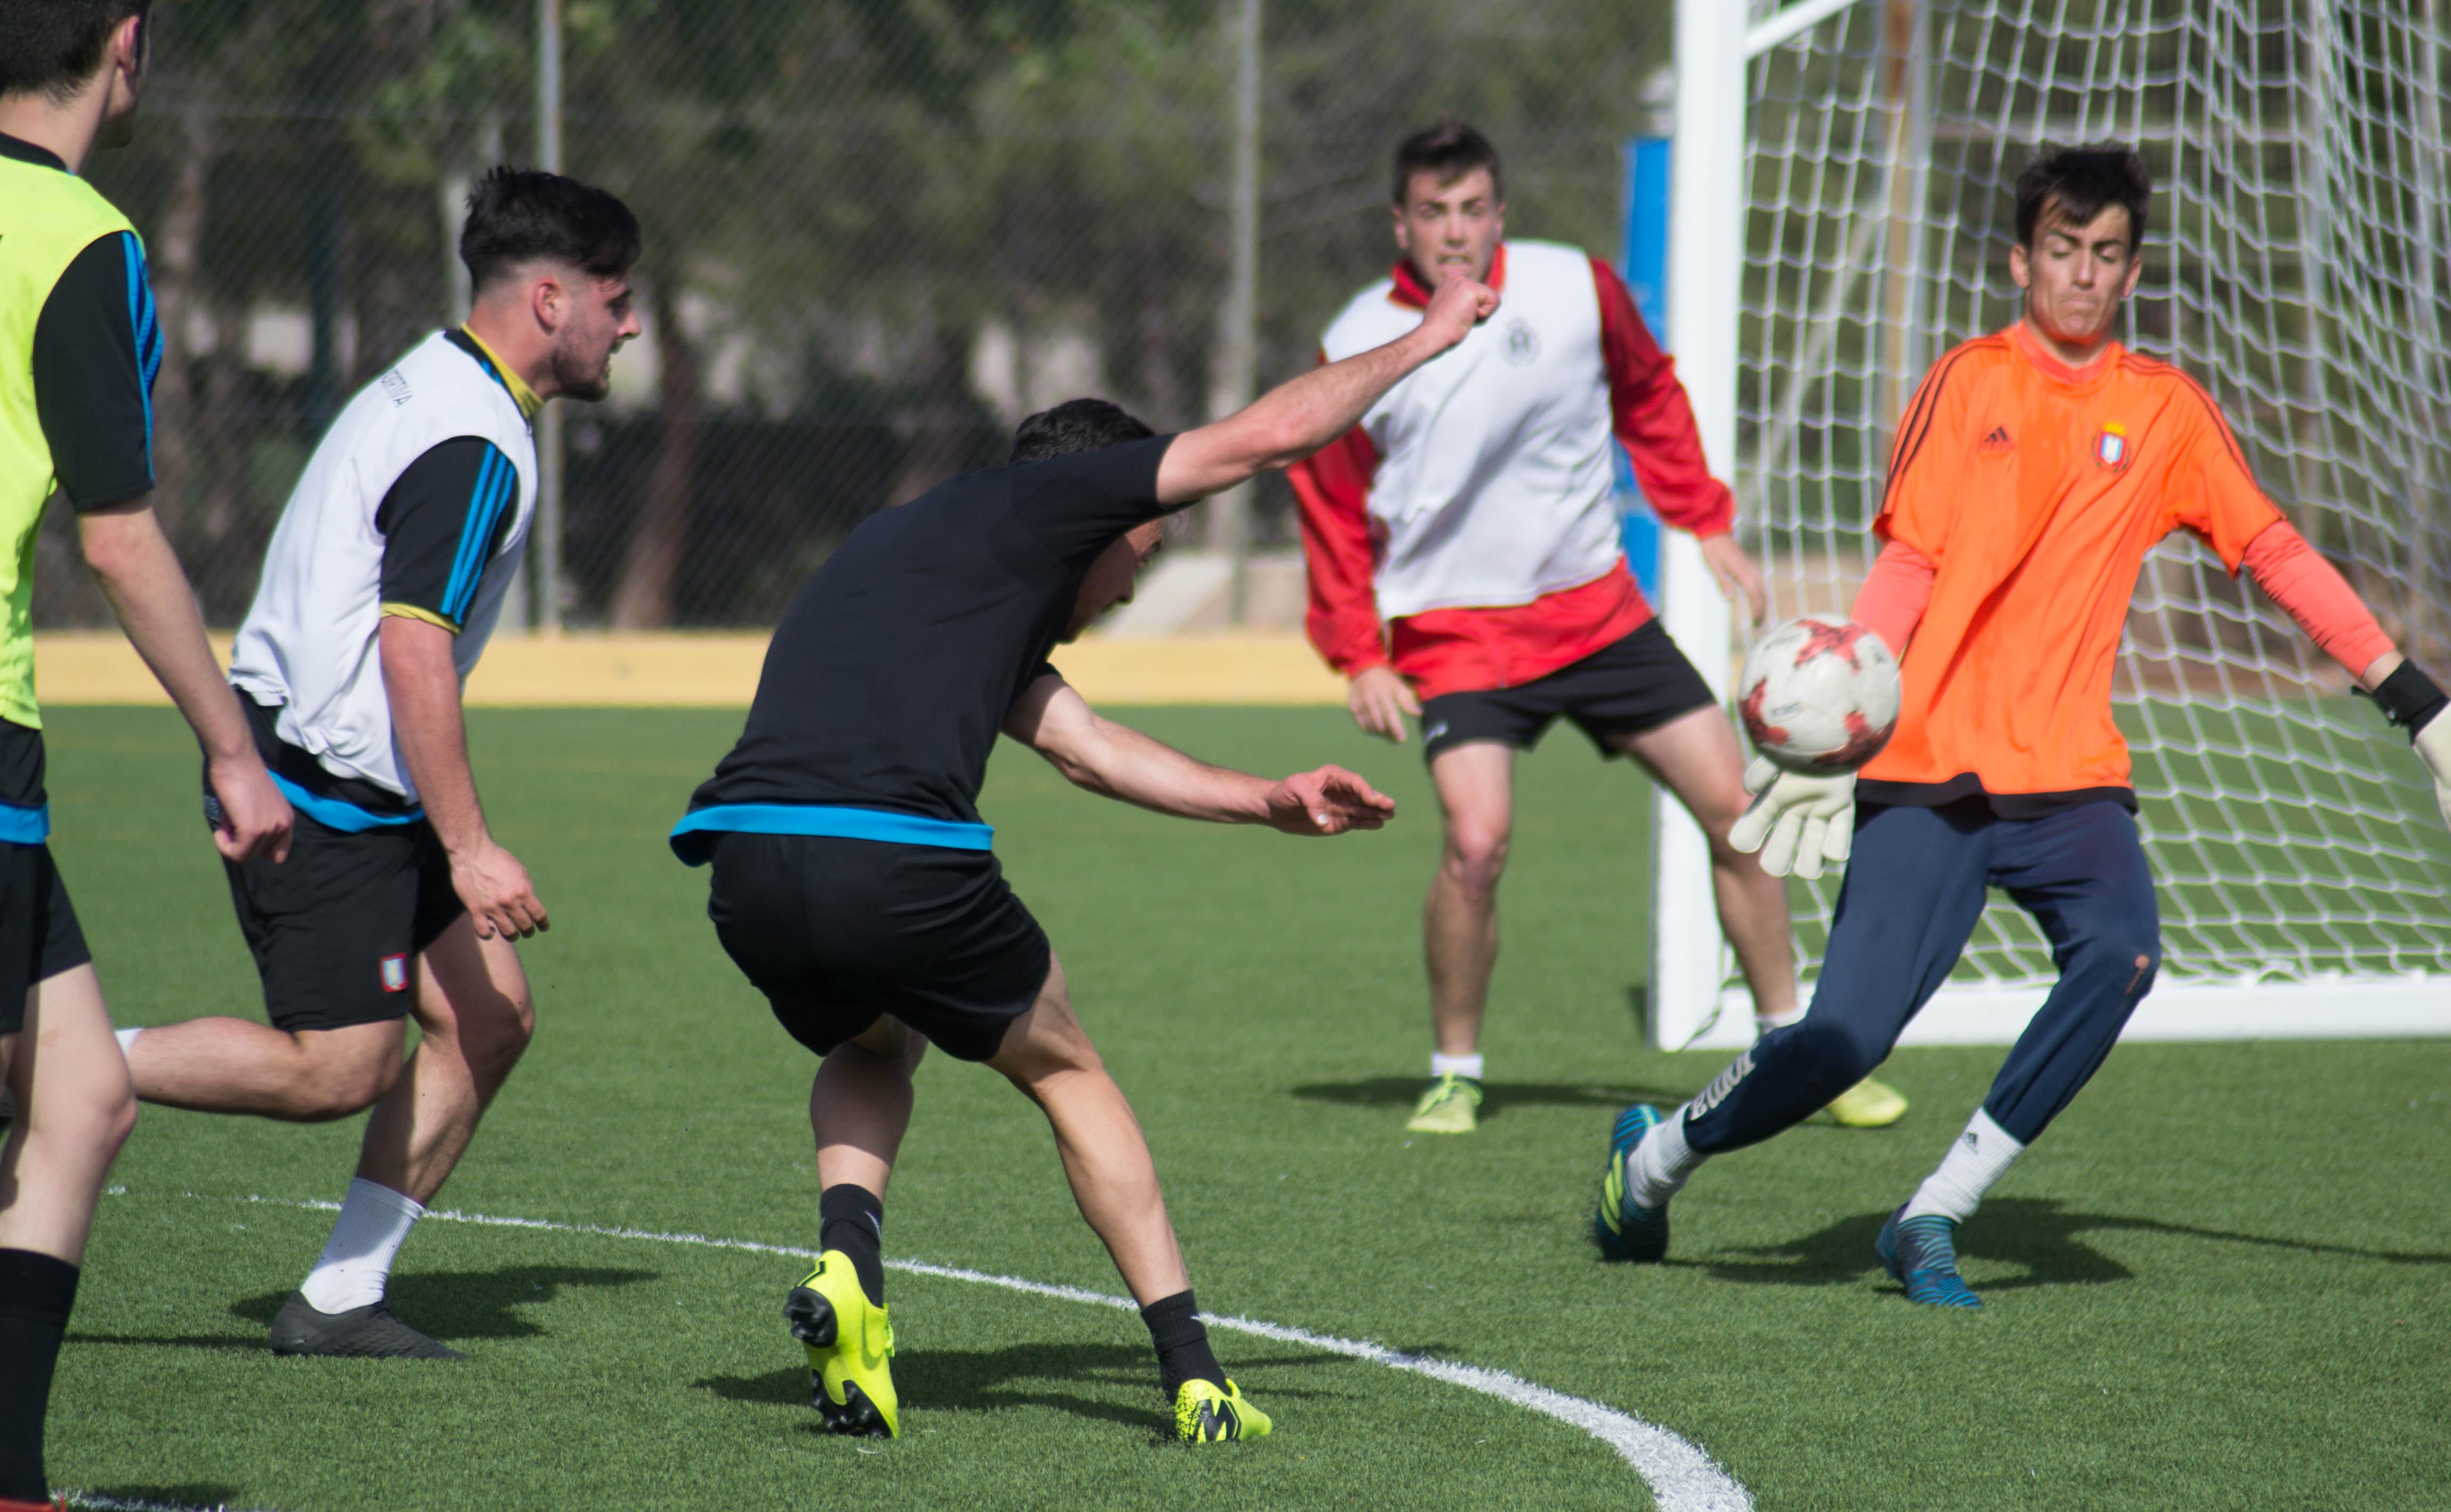 5 jugadores juveniles terminarán la temporada entrenando con el equipo de Tercera División